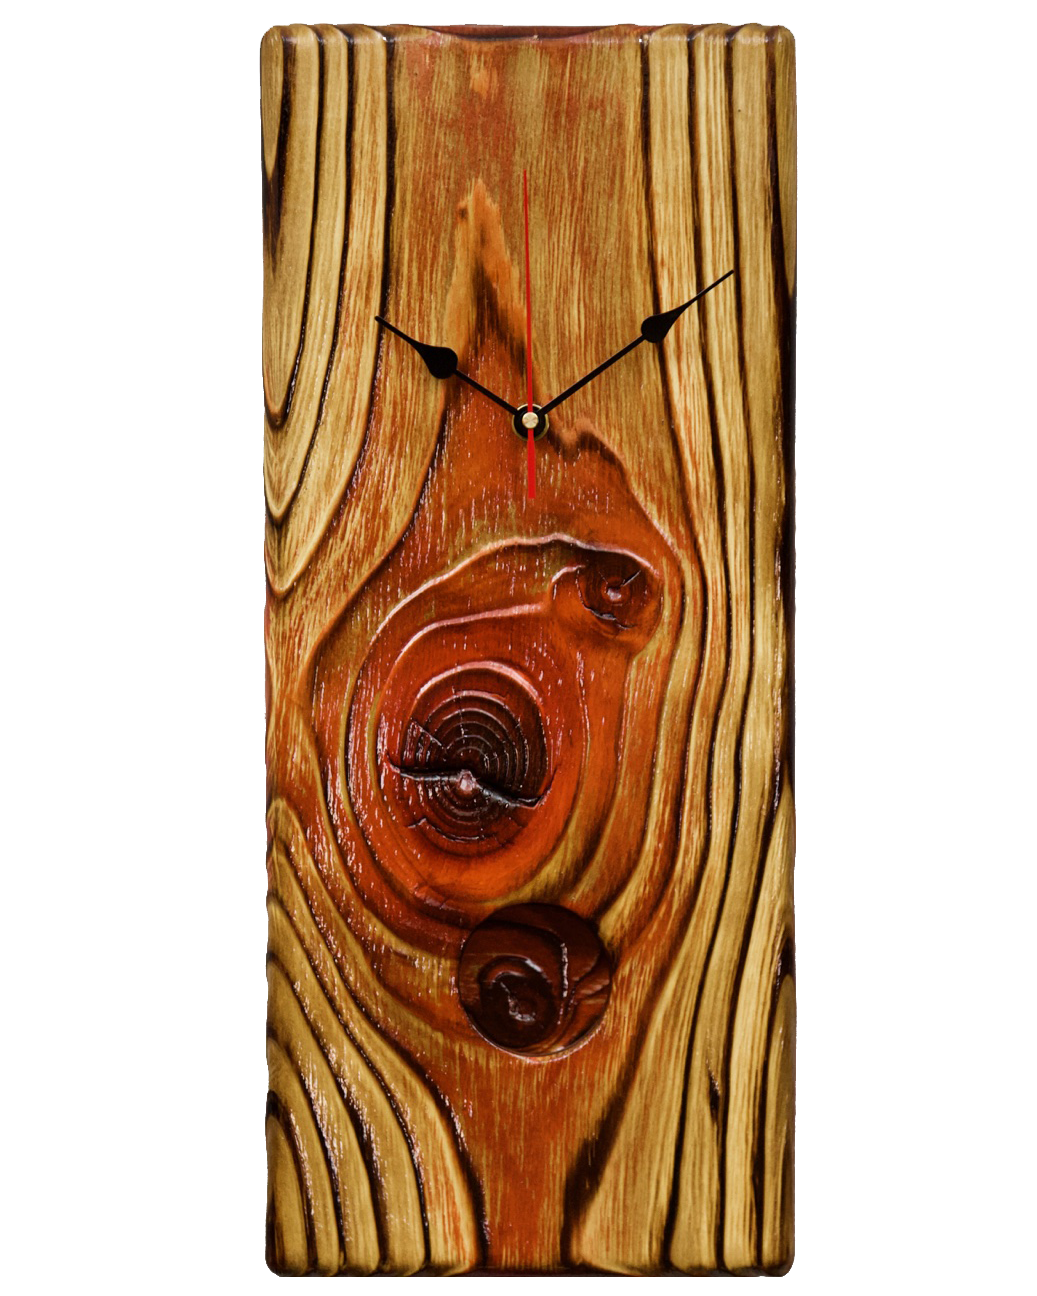 Textured Wood Clock Art - Stanley 0002 — Korzen Designs